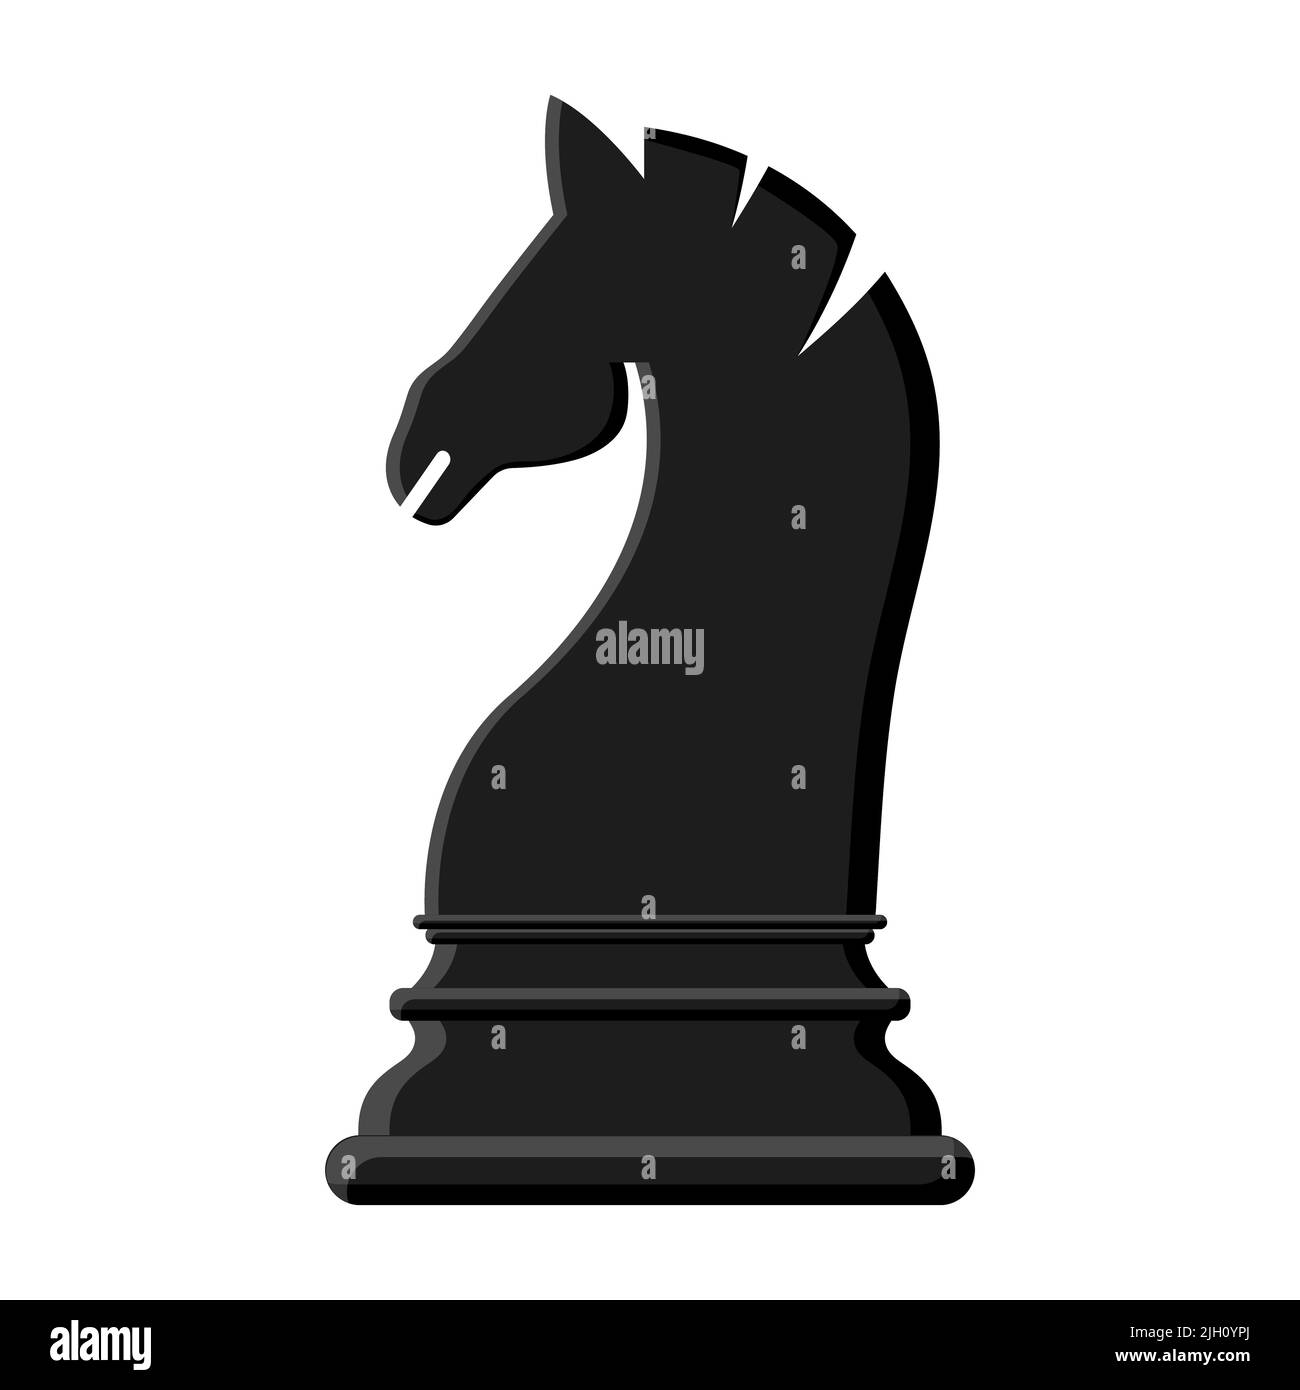 Chevalier noir d'échecs de dessin animé isolé sur fond blanc. Icônes d'échecs. Illustration vectorielle pour la conception Illustration de Vecteur